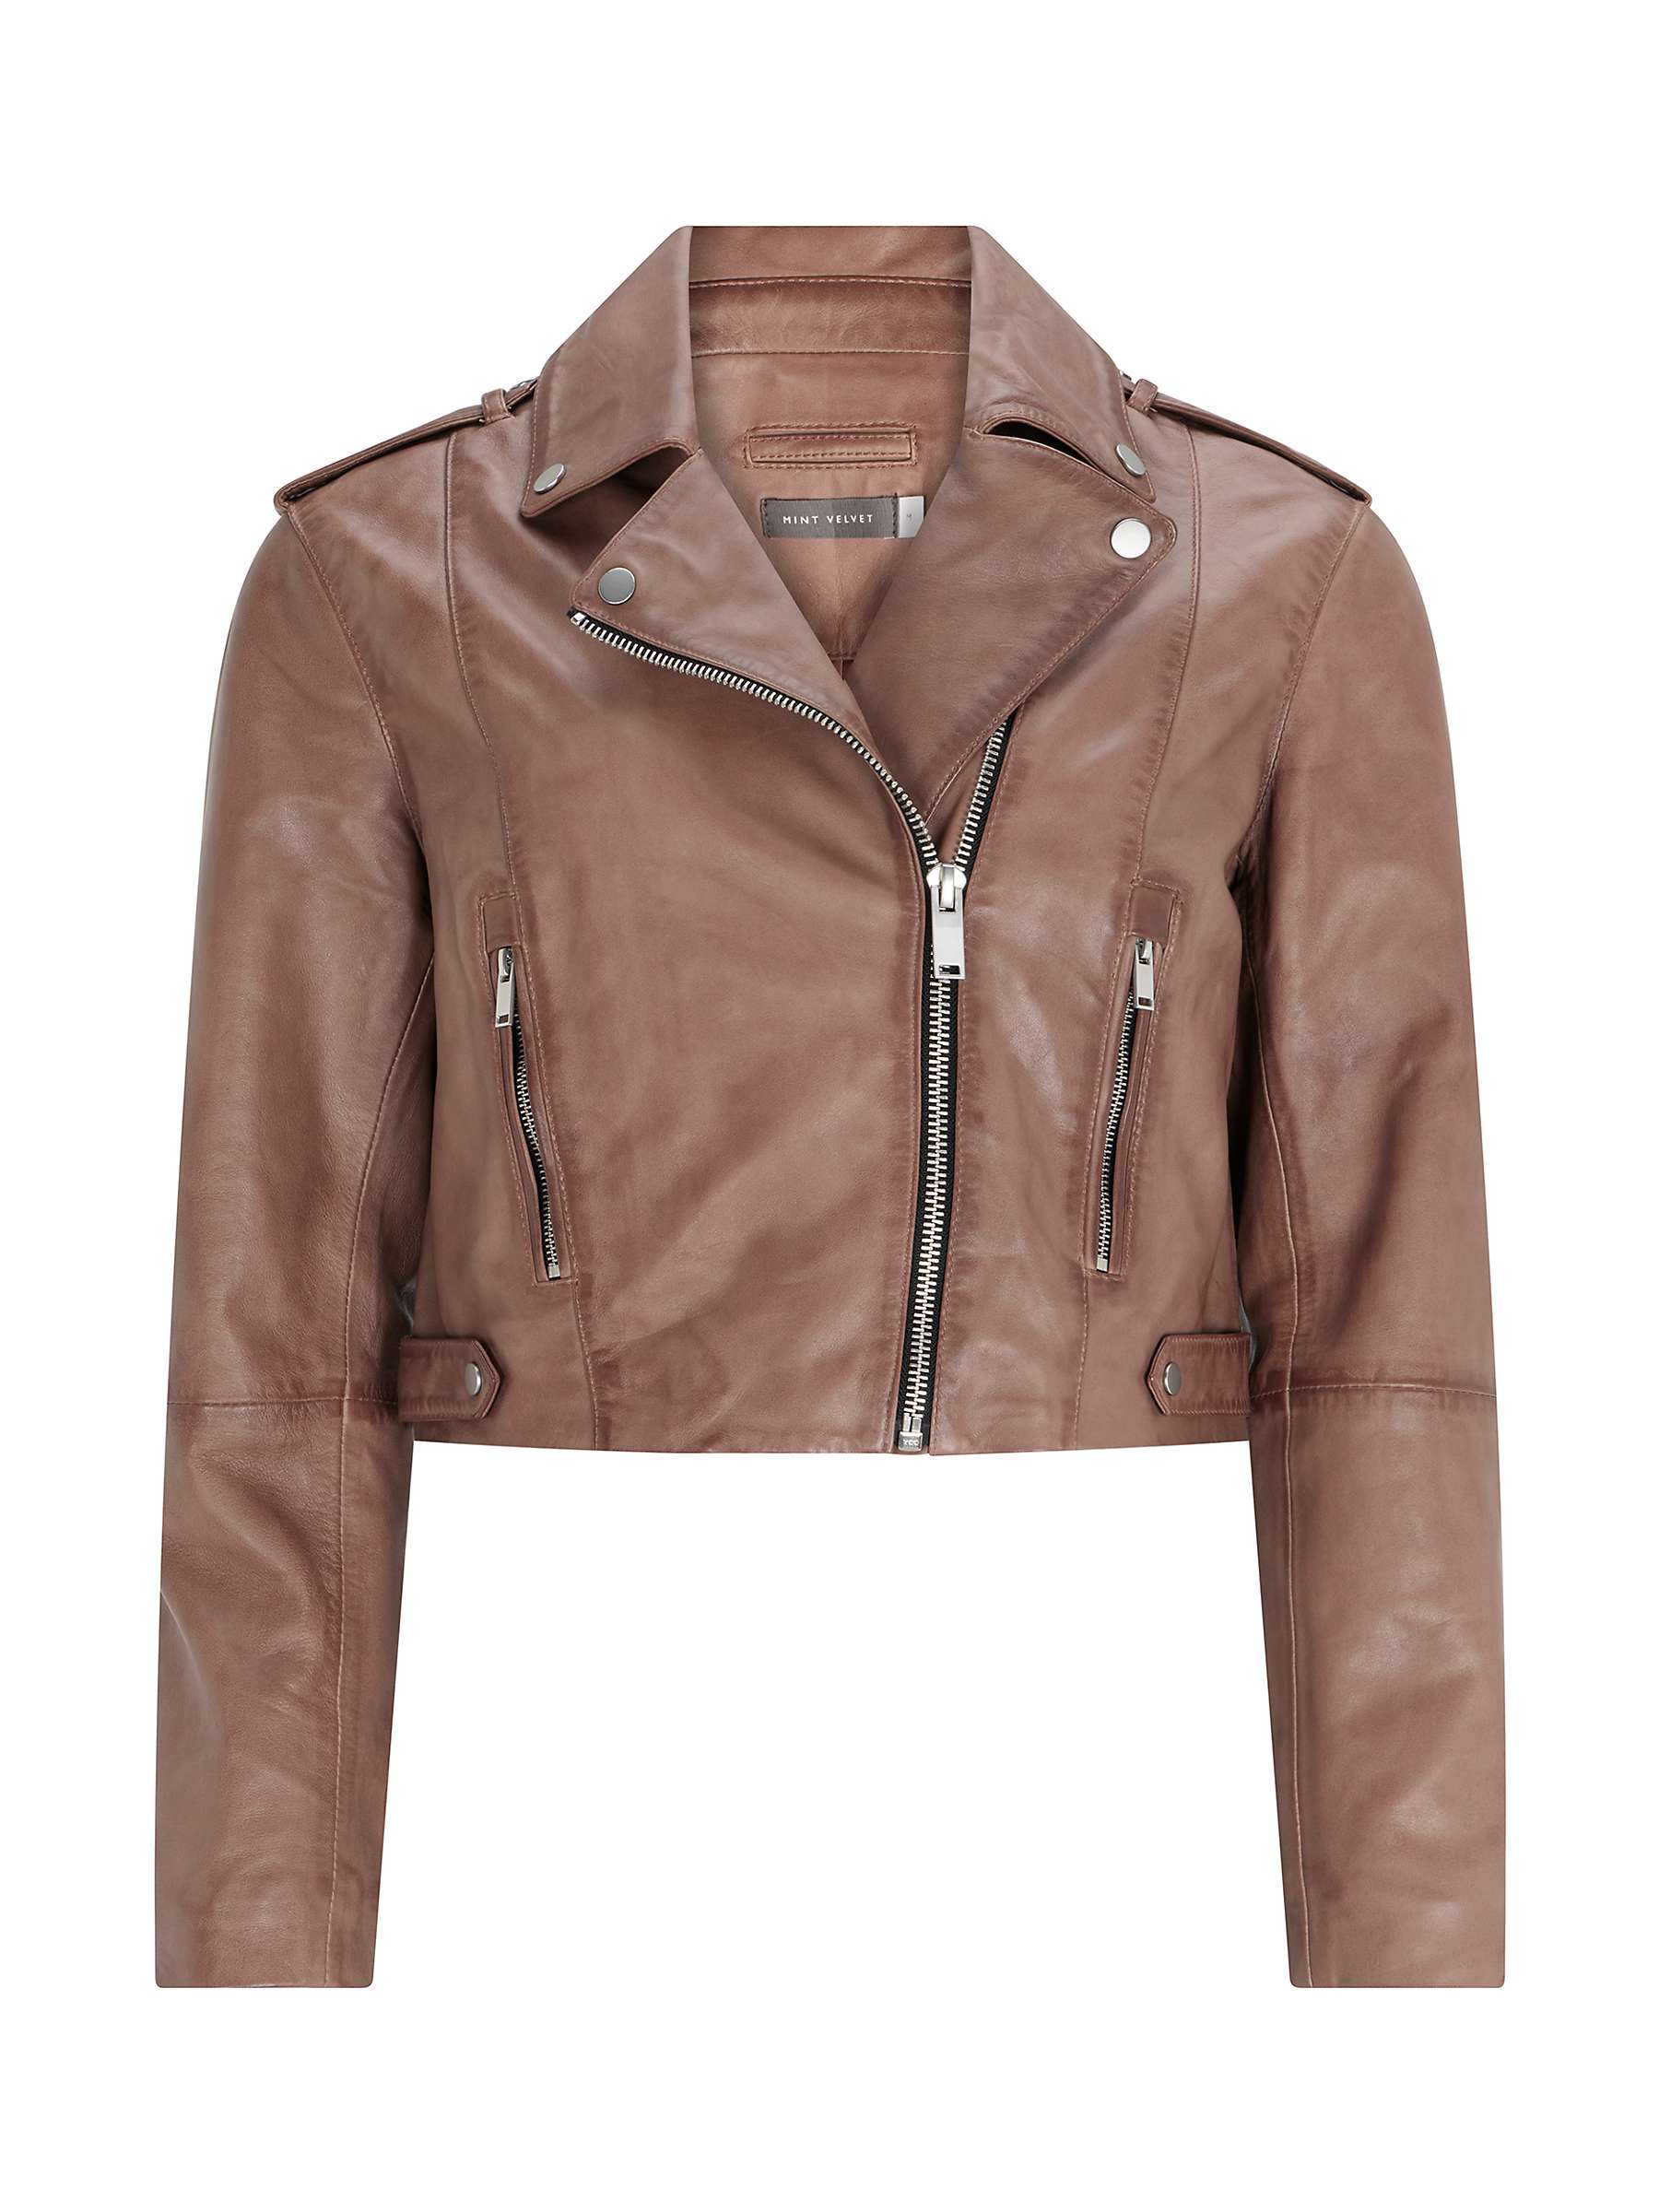 Buy Mint Velvet Leather Biker Jacket, Brown/Multi Online at johnlewis.com